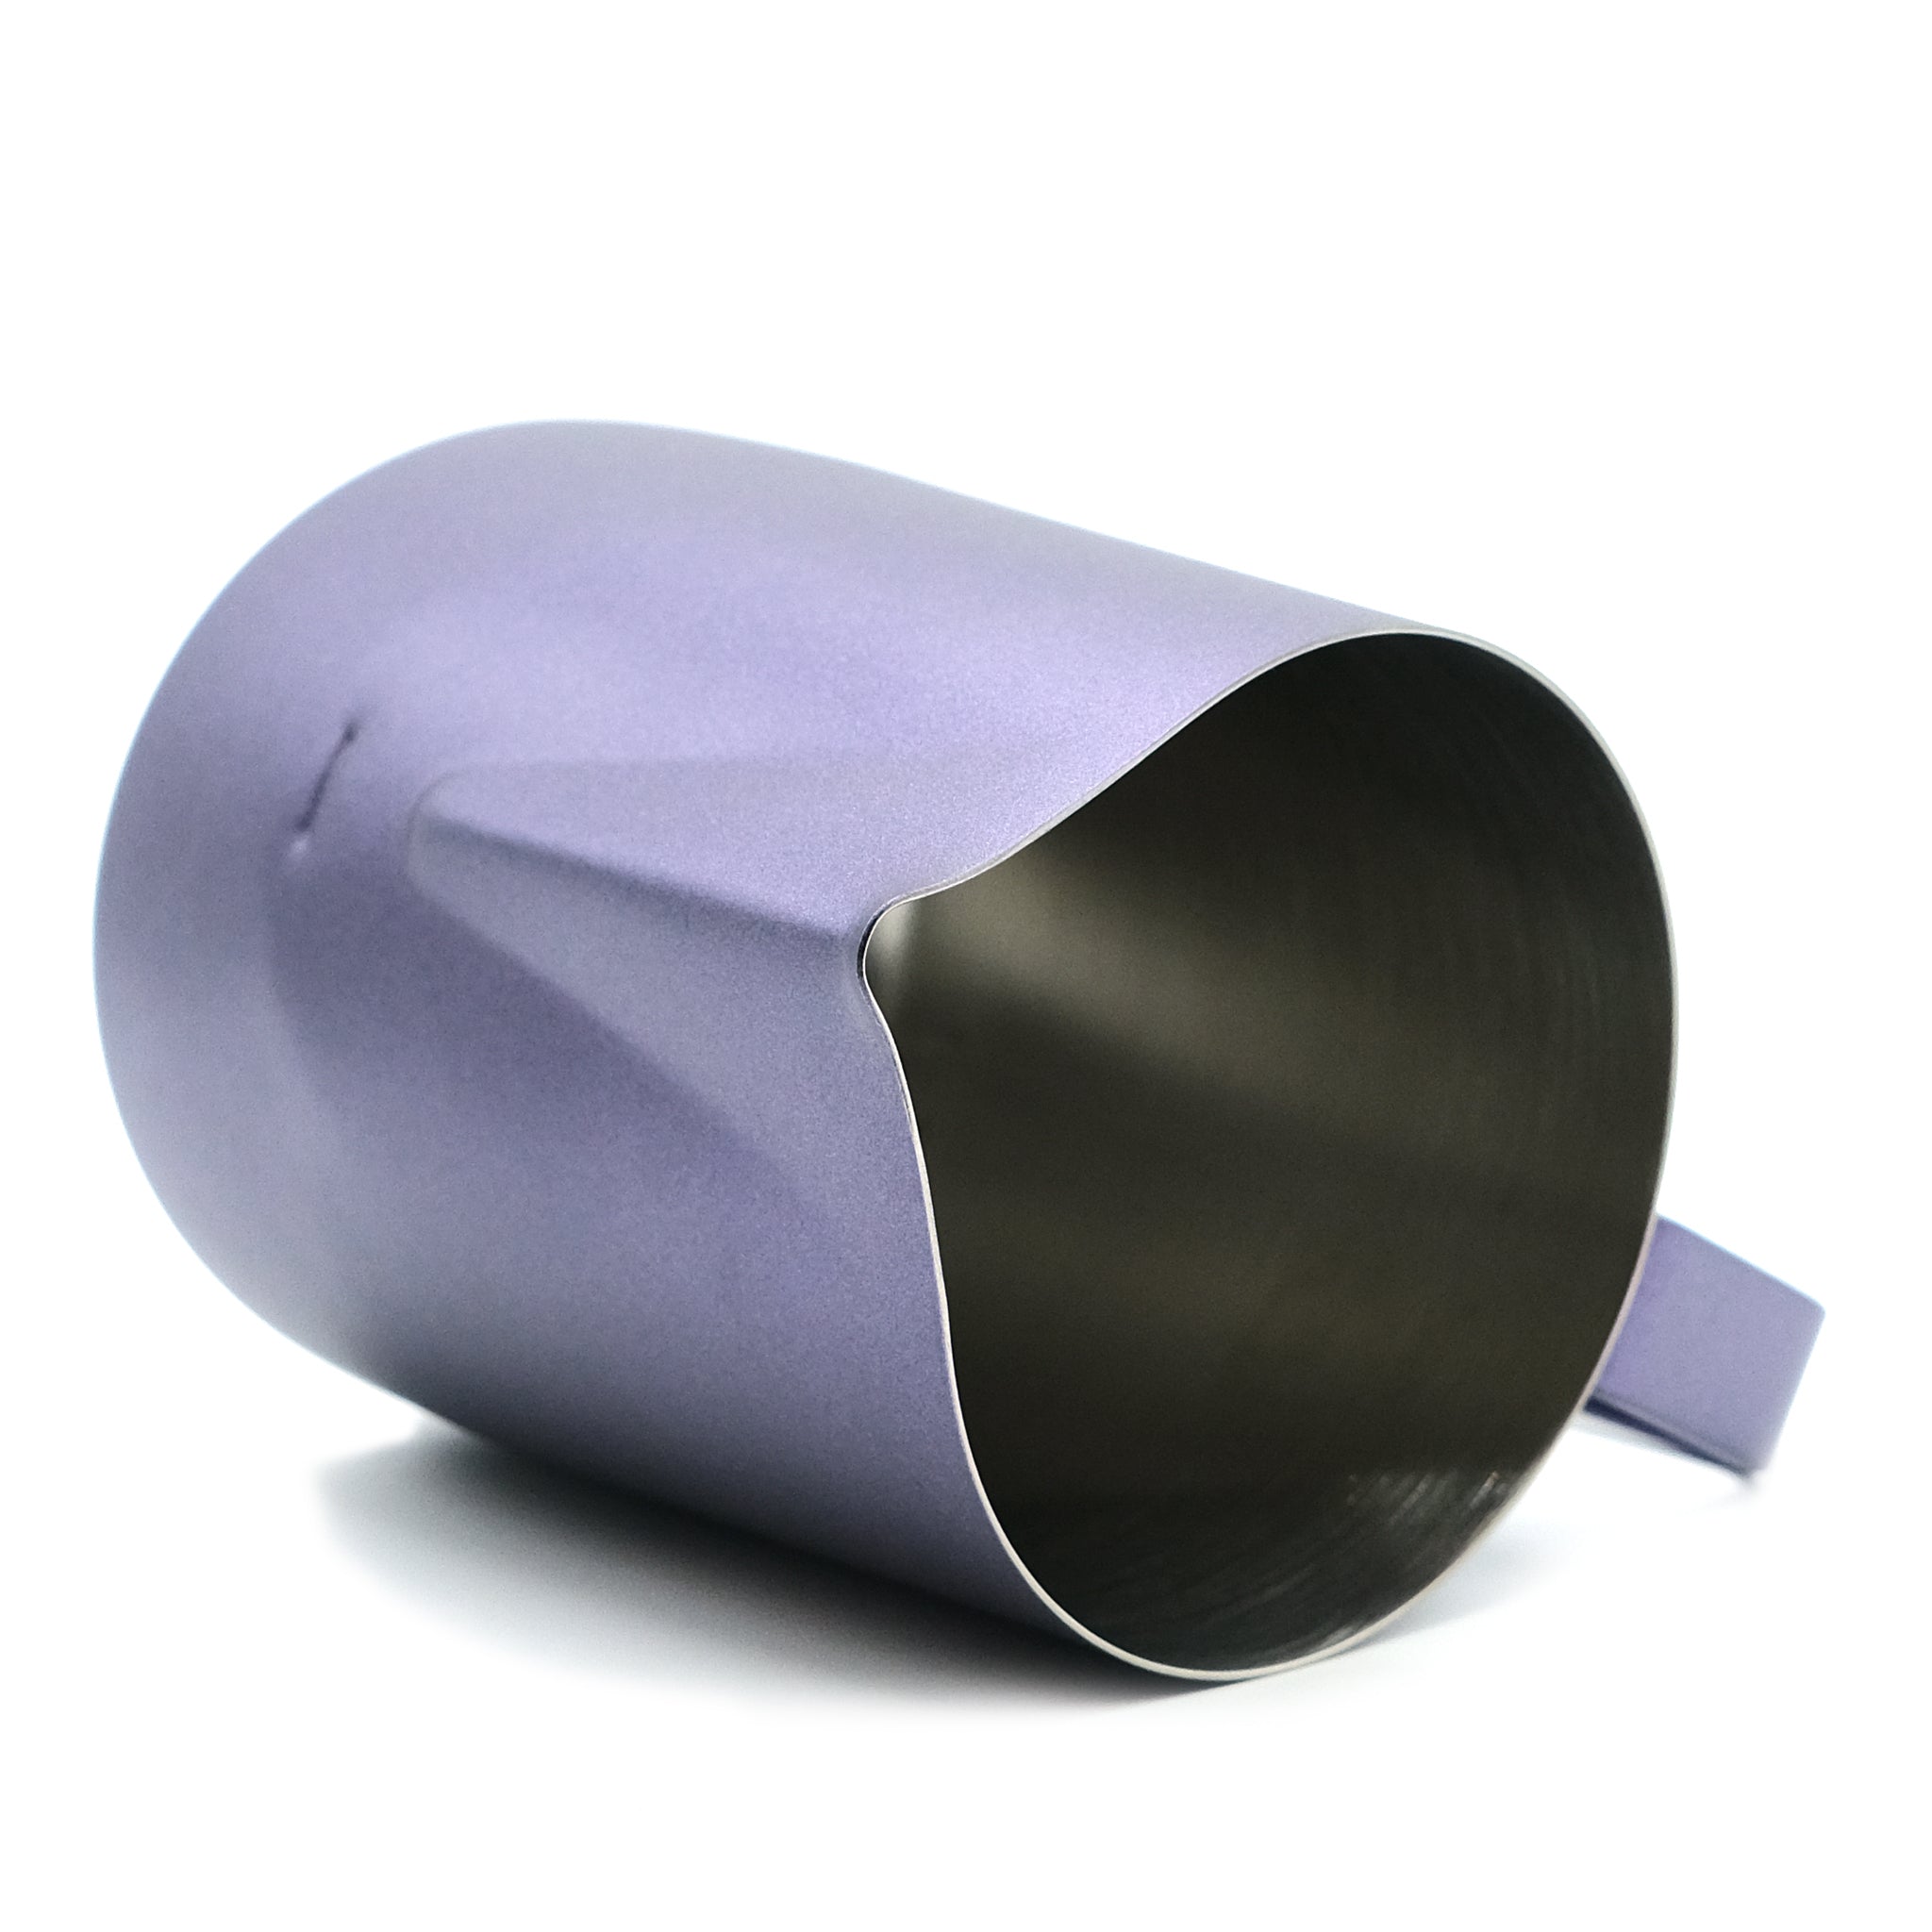 https://www.recentbeans.com/cdn/shop/products/wpm-milk-pitcher-hc7116pp-purple-spout-shape_2048x2048.jpg?v=1667063804